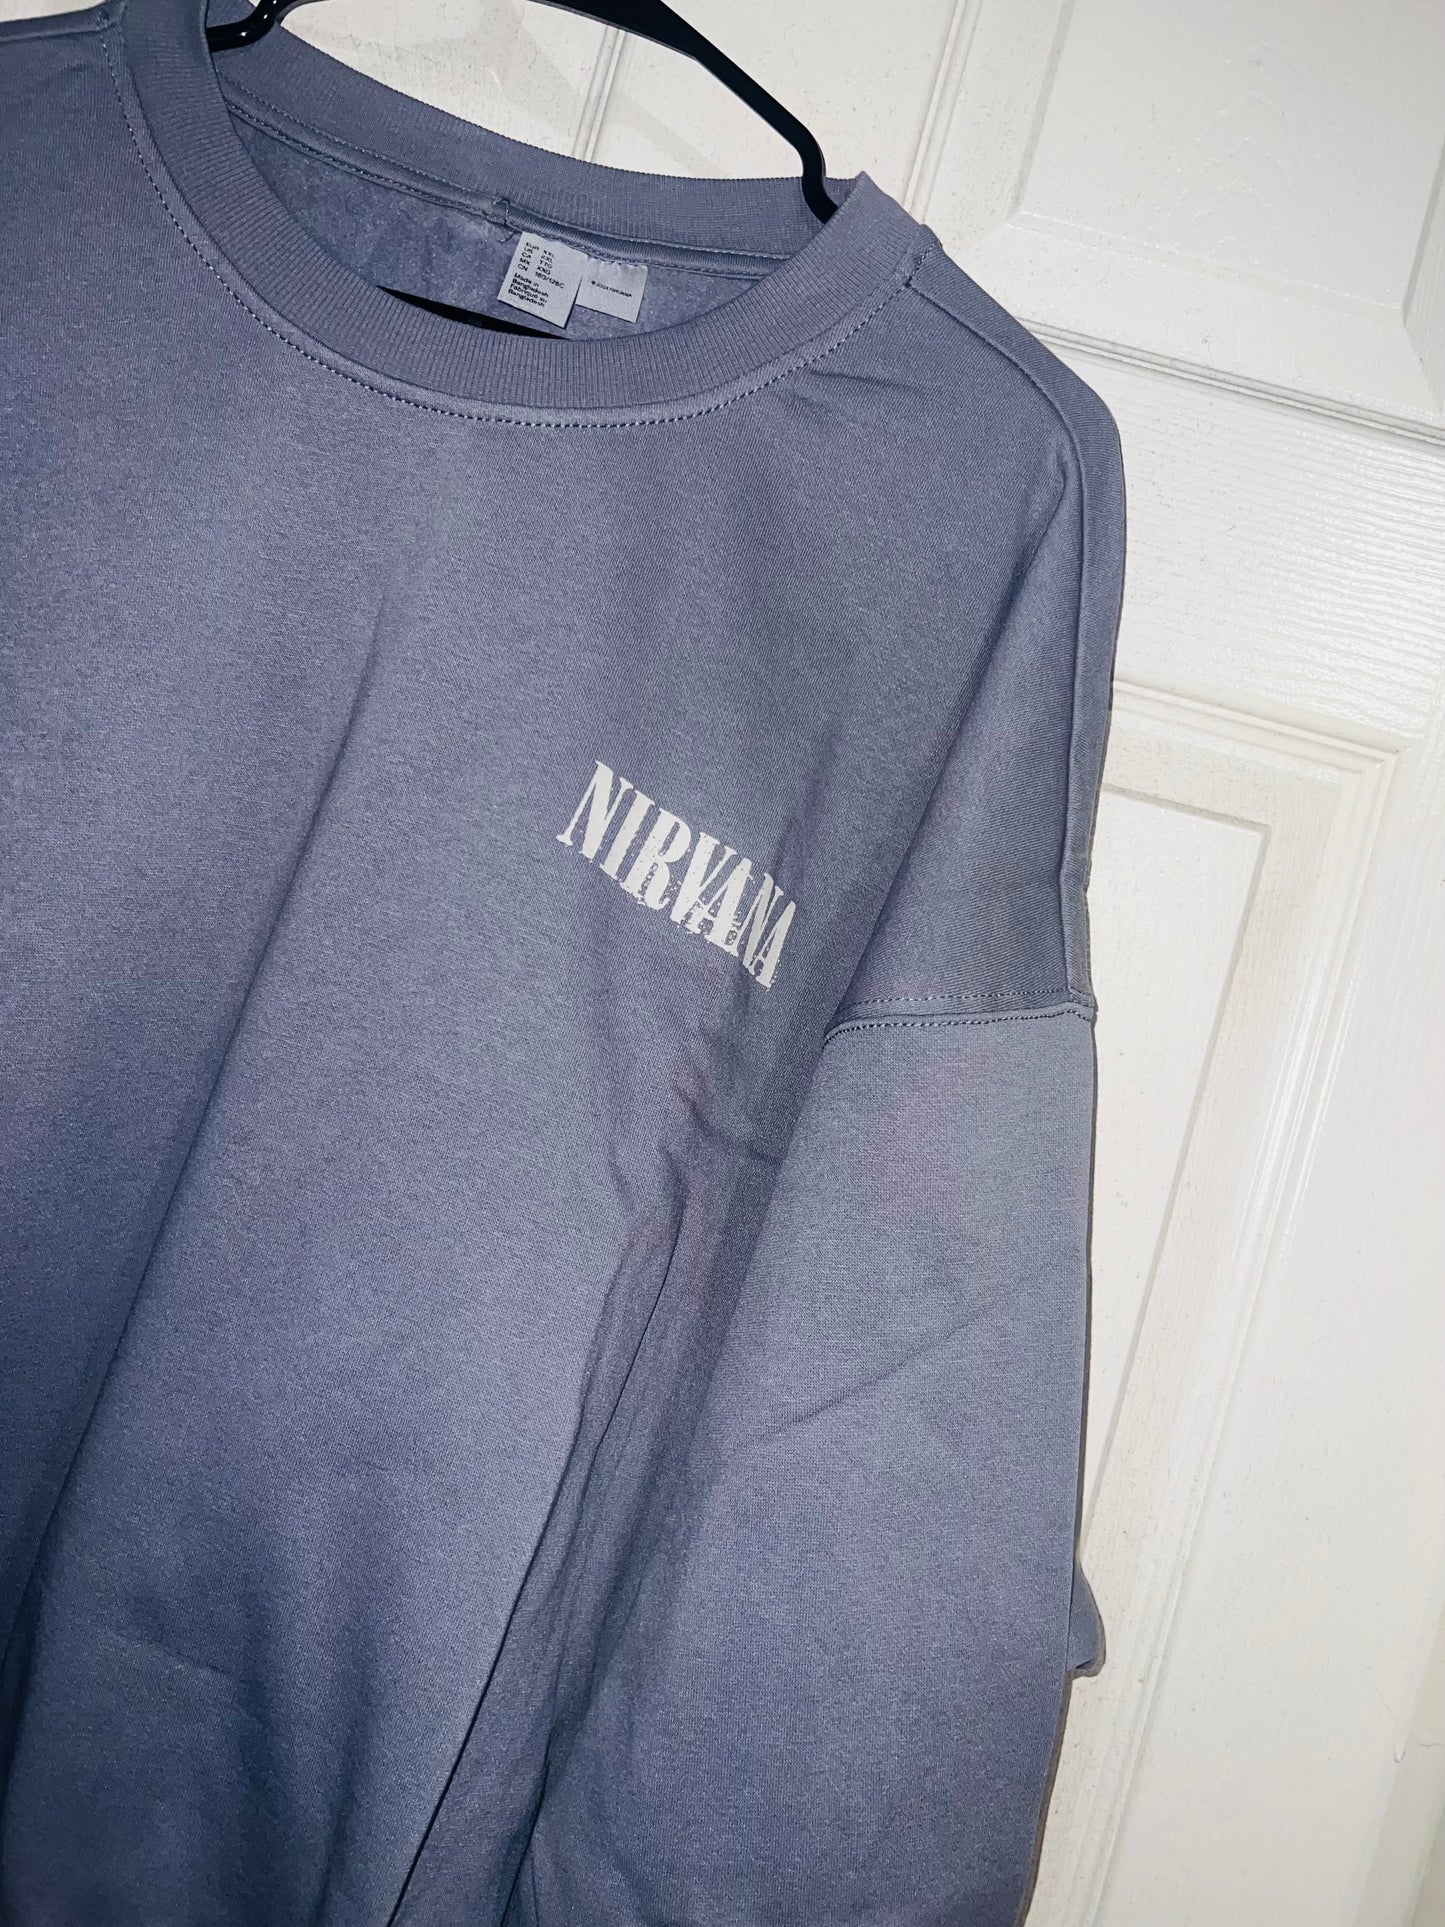 Nirvana Double Sided Oversized Sweatshirt